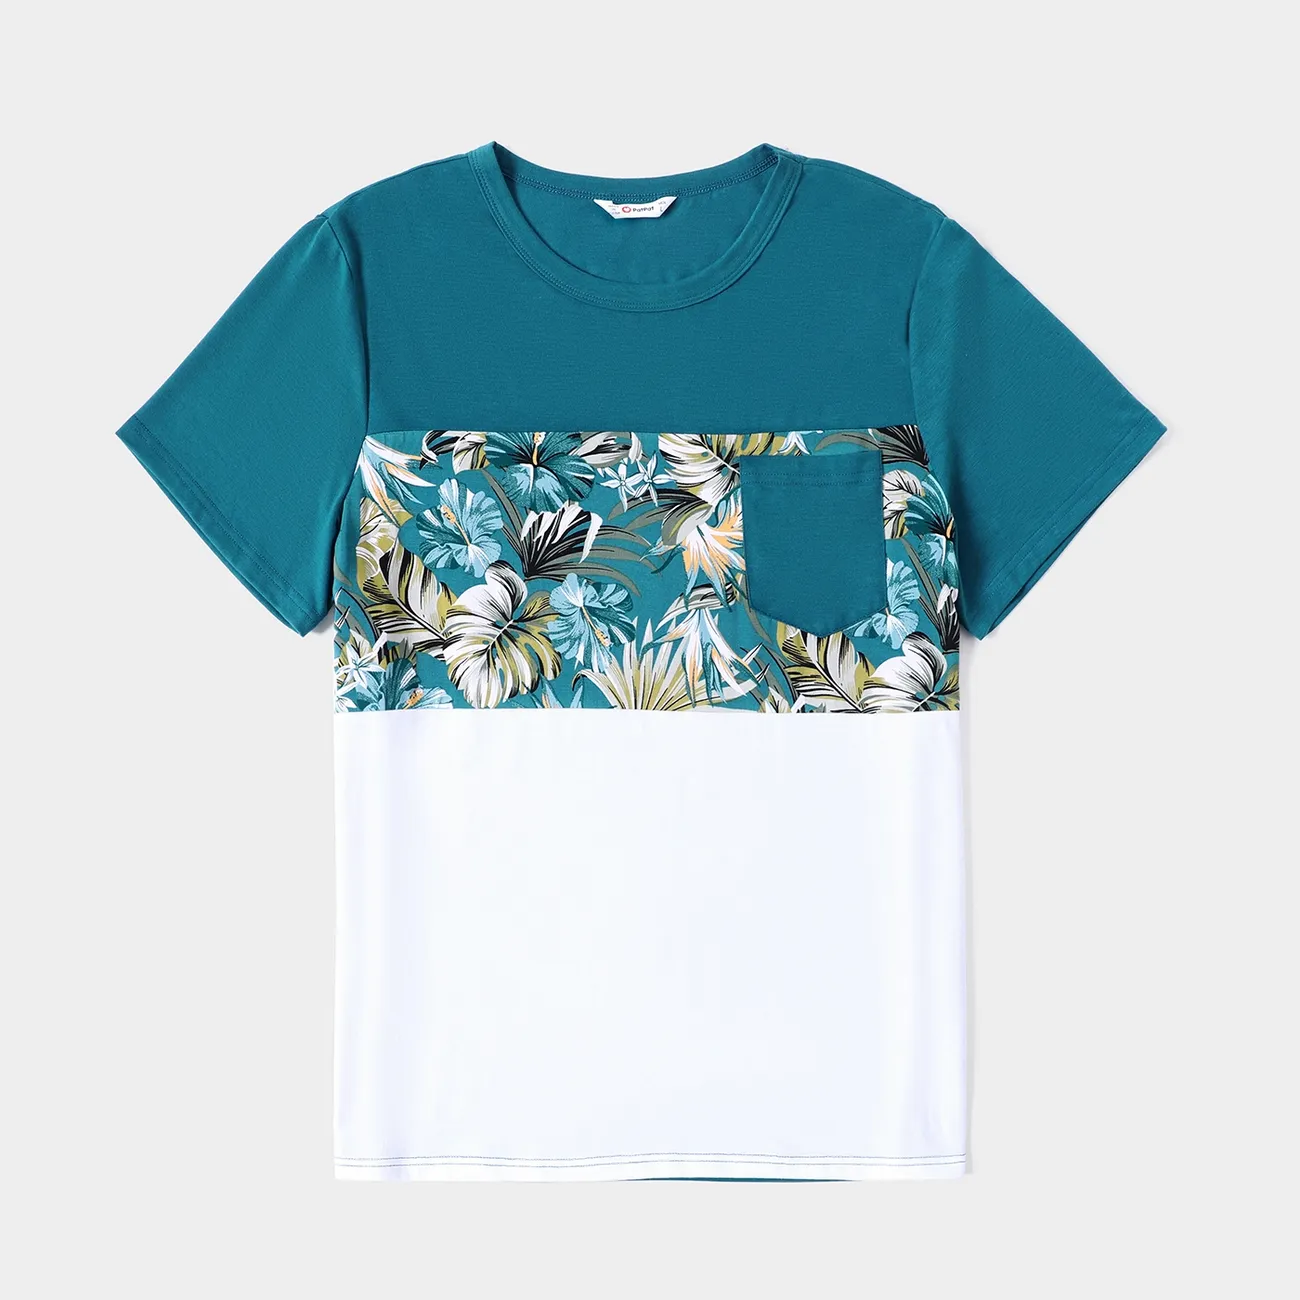 復活節 全家裝 熱帶植物花卉 短袖 親子裝 套裝 藍白色 big image 1